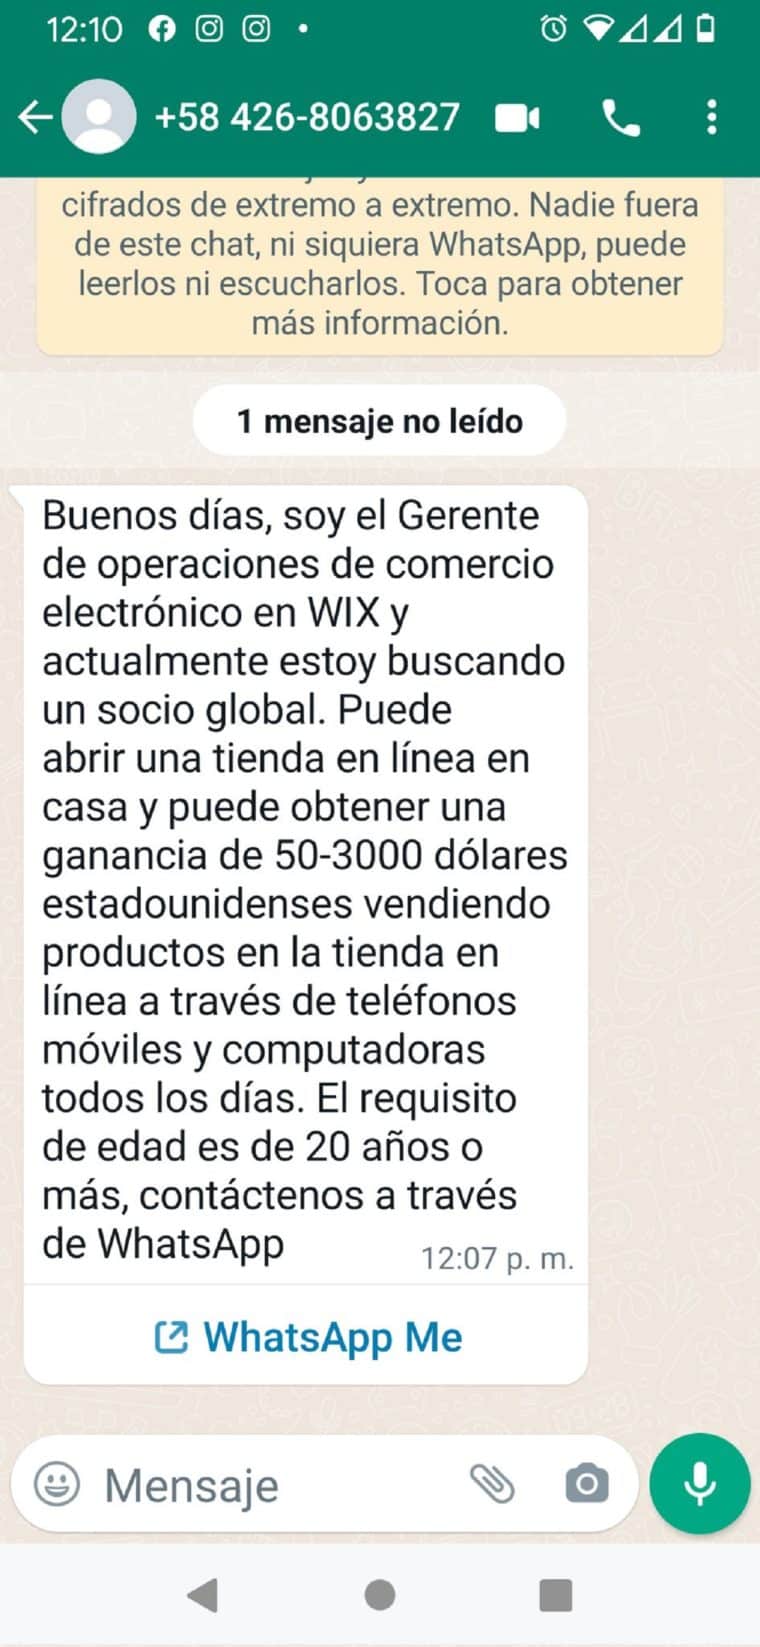 “Ganancias de 50 y 3.000 dólares”: el nuevo método de estafa que está comenzando en Venezuela a través de WhatsApp